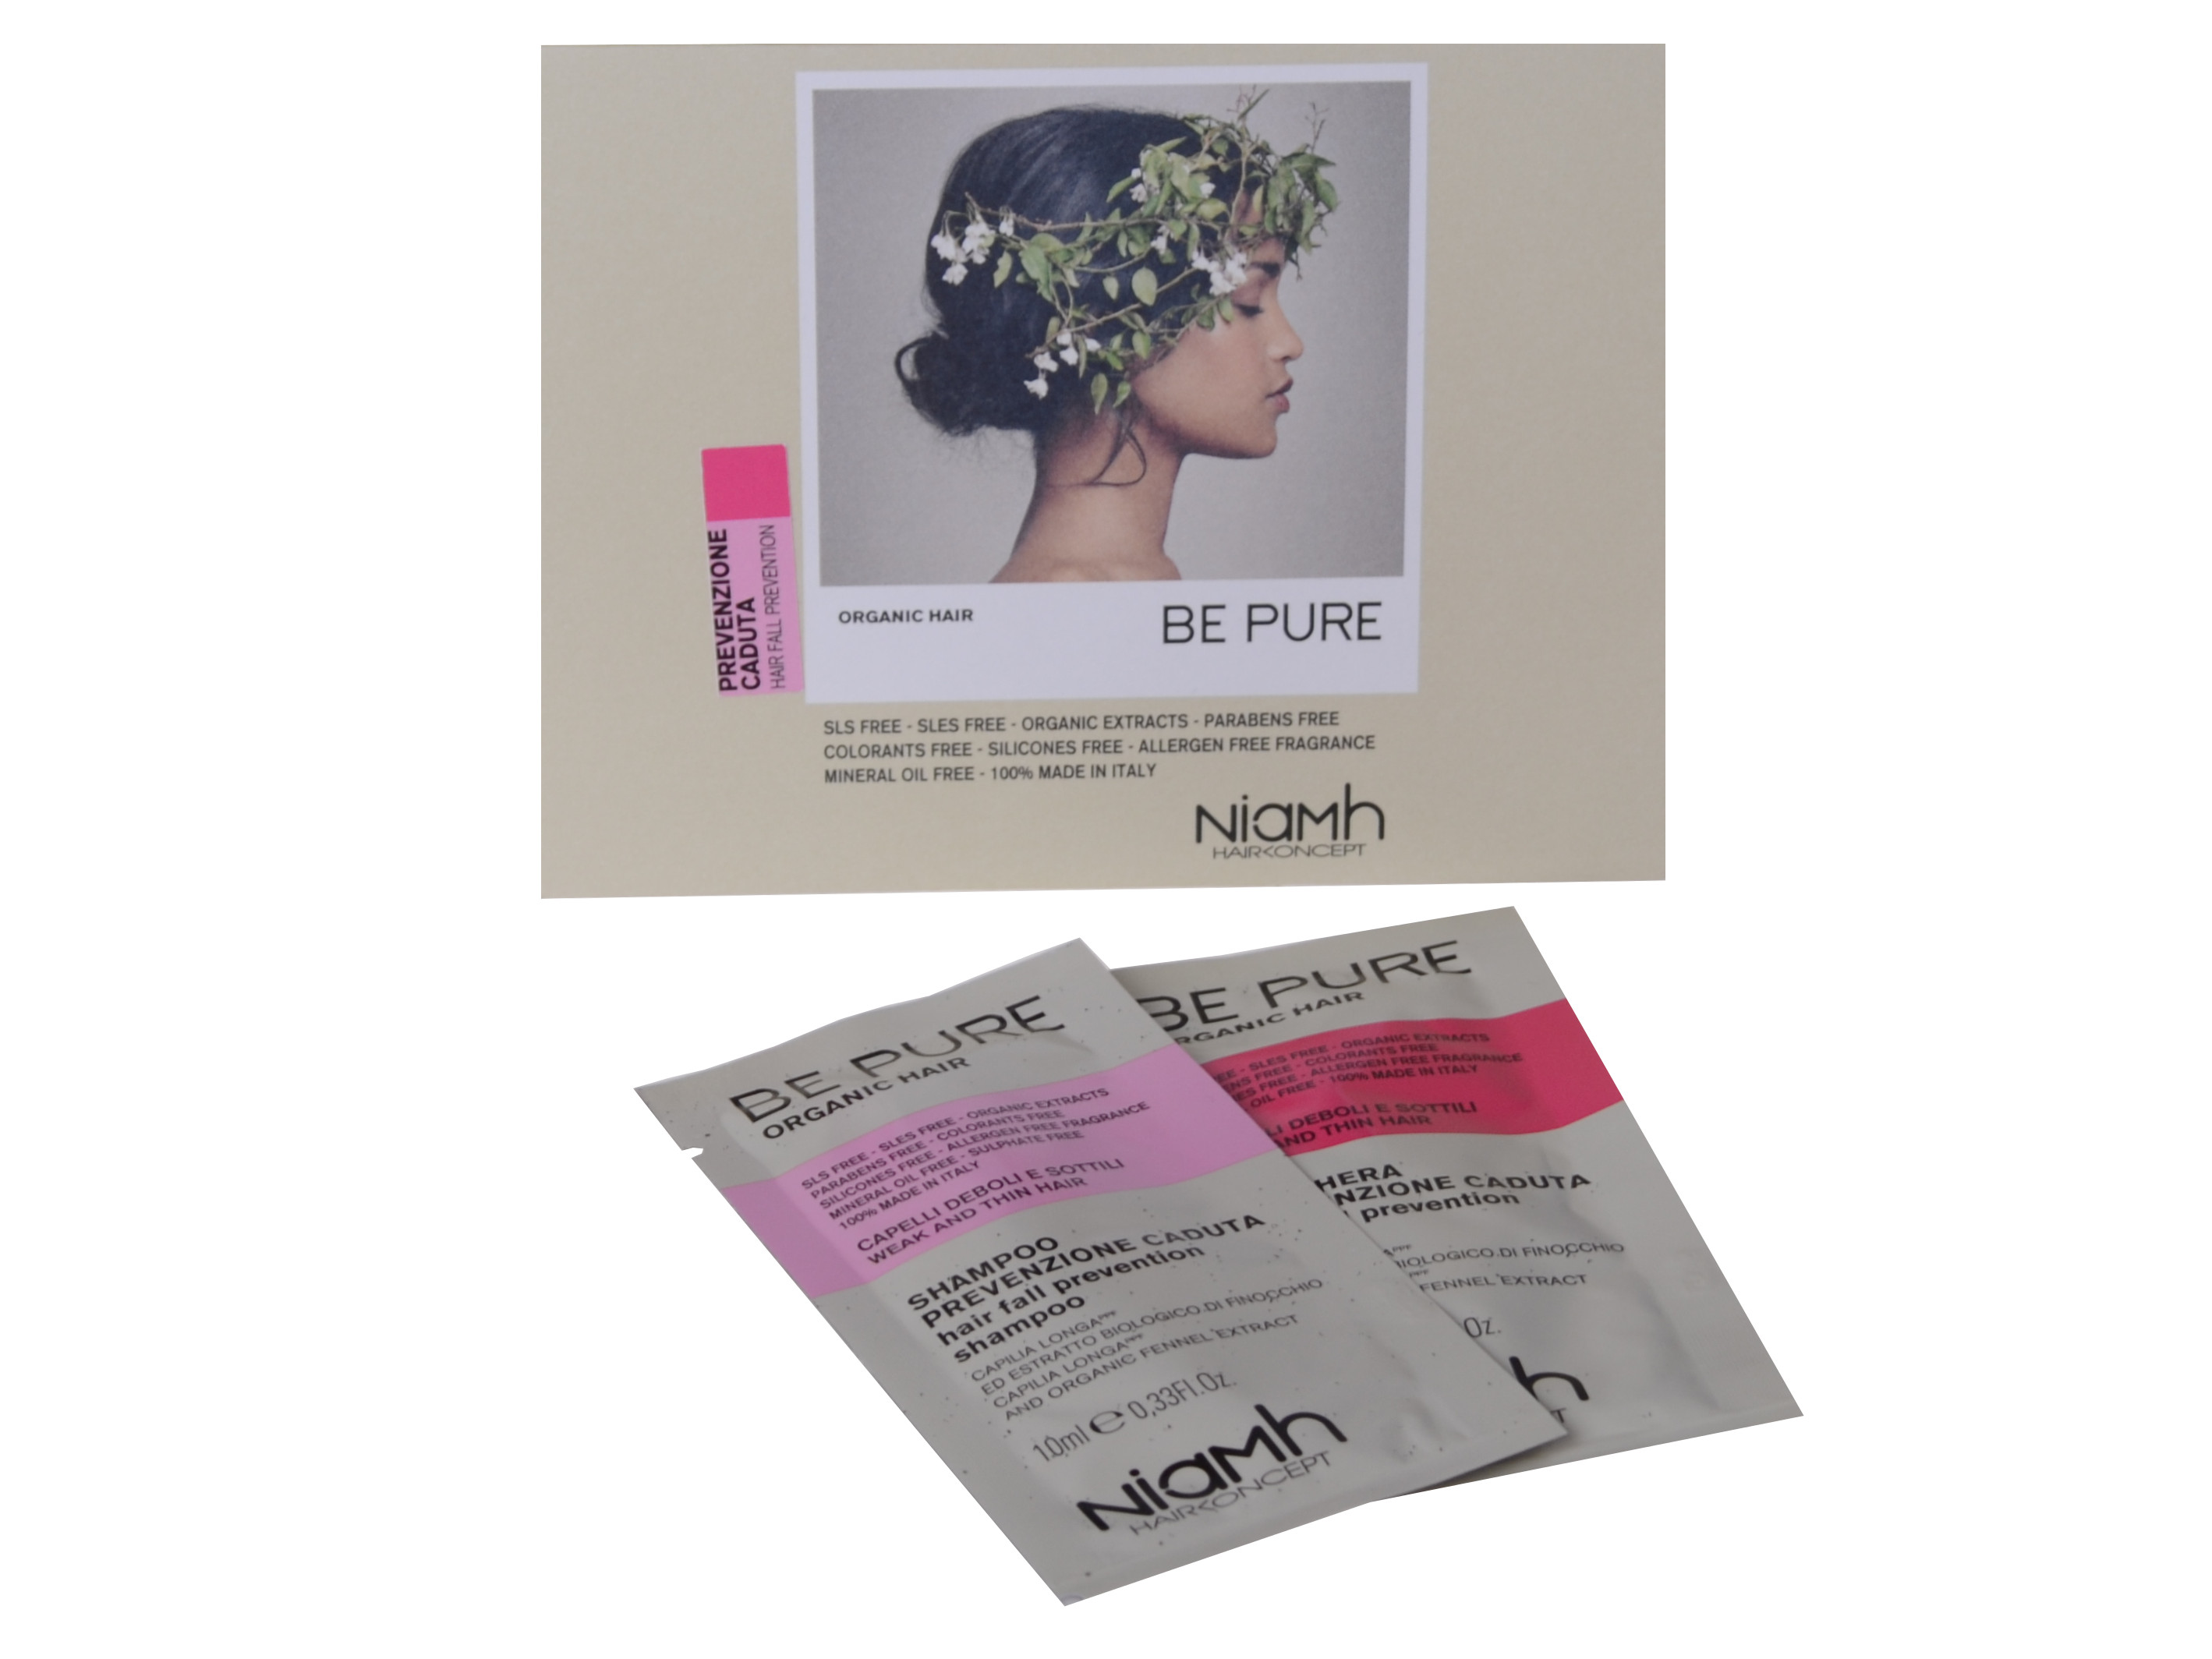 Šampon a maska proti padání vlasů Niamh Be Pure Hair Fall Prevention - 2 x 10 ml (1363)